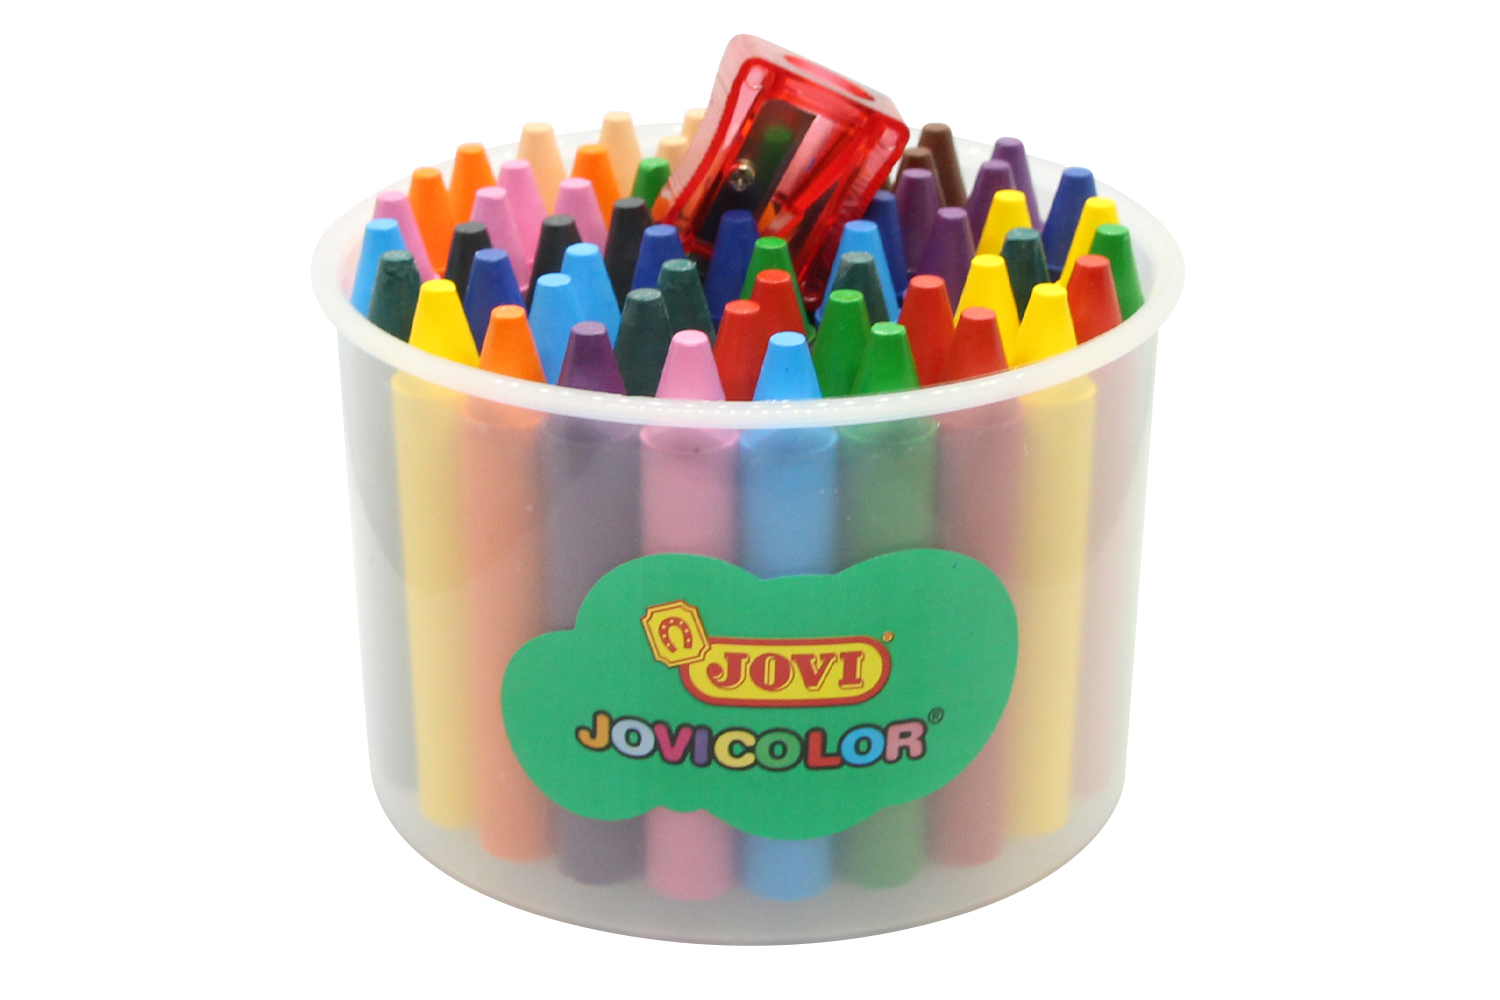 Crayons, crayons et aquarelle dans 1 bébé Carioca à partir de 1 an avec  taille-crayon